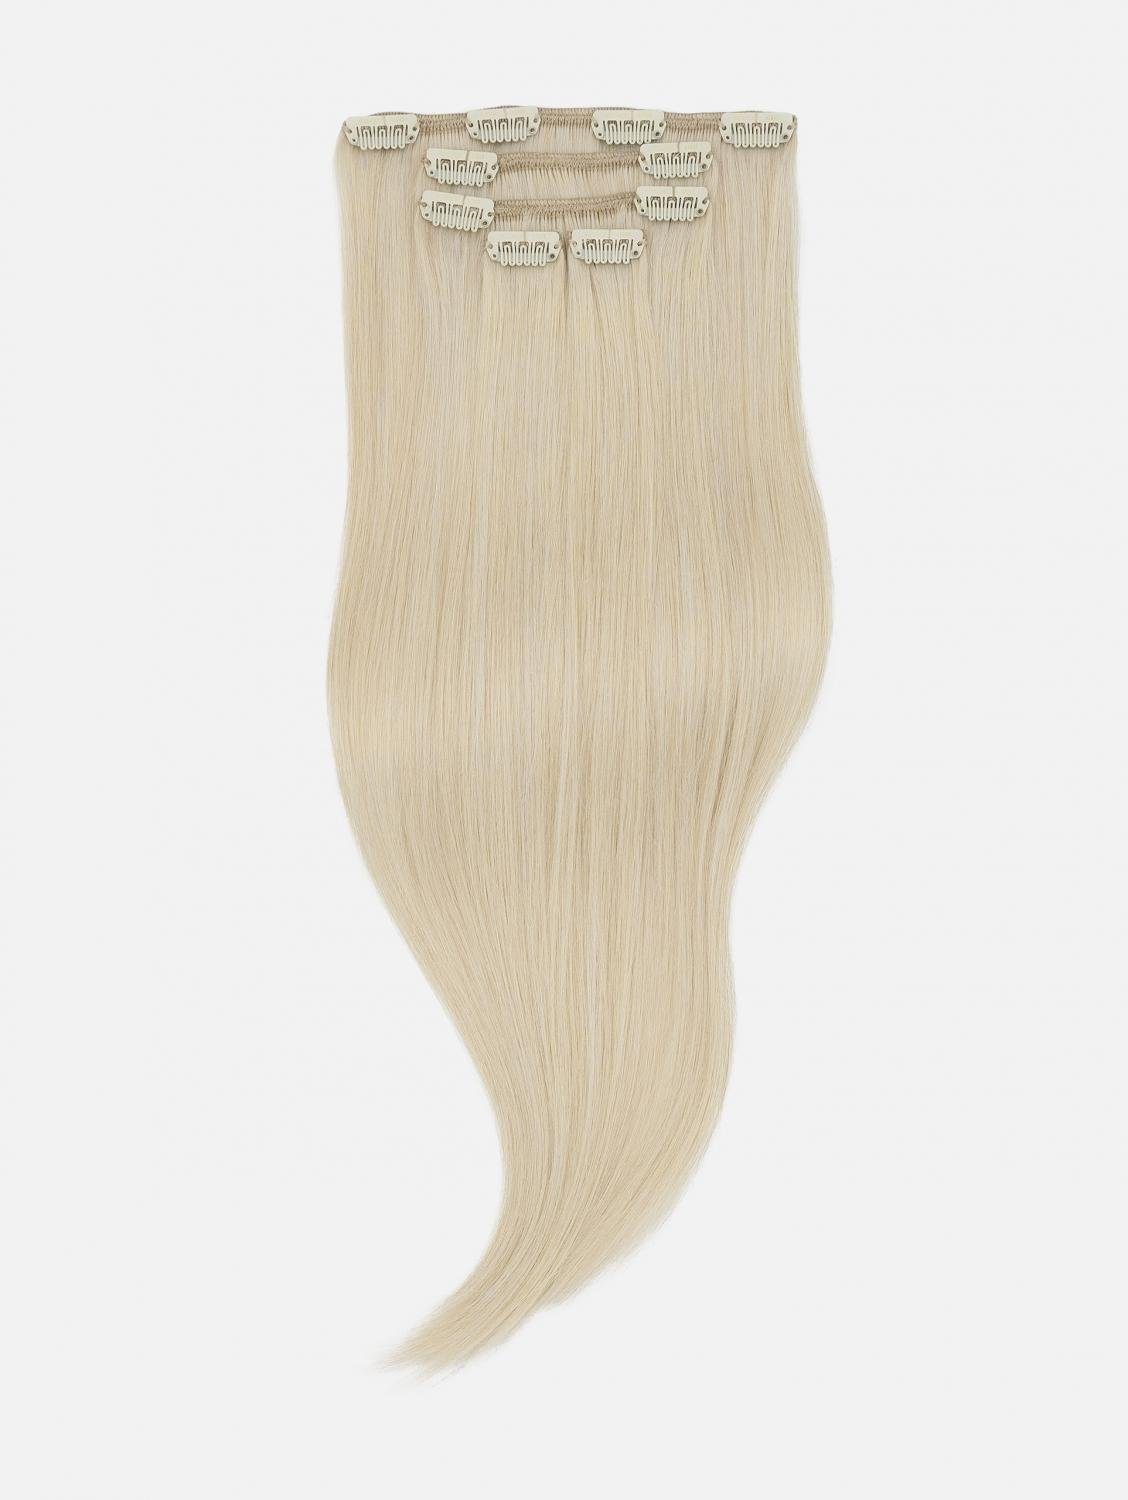 EH - Haarverlängerung Echthaar-Extension Clip-In Extensions NATURAL Seidenglatt Echthaar - 5-teilig 40cm, 50cm, Echthaar #60S (Silver Blonde)